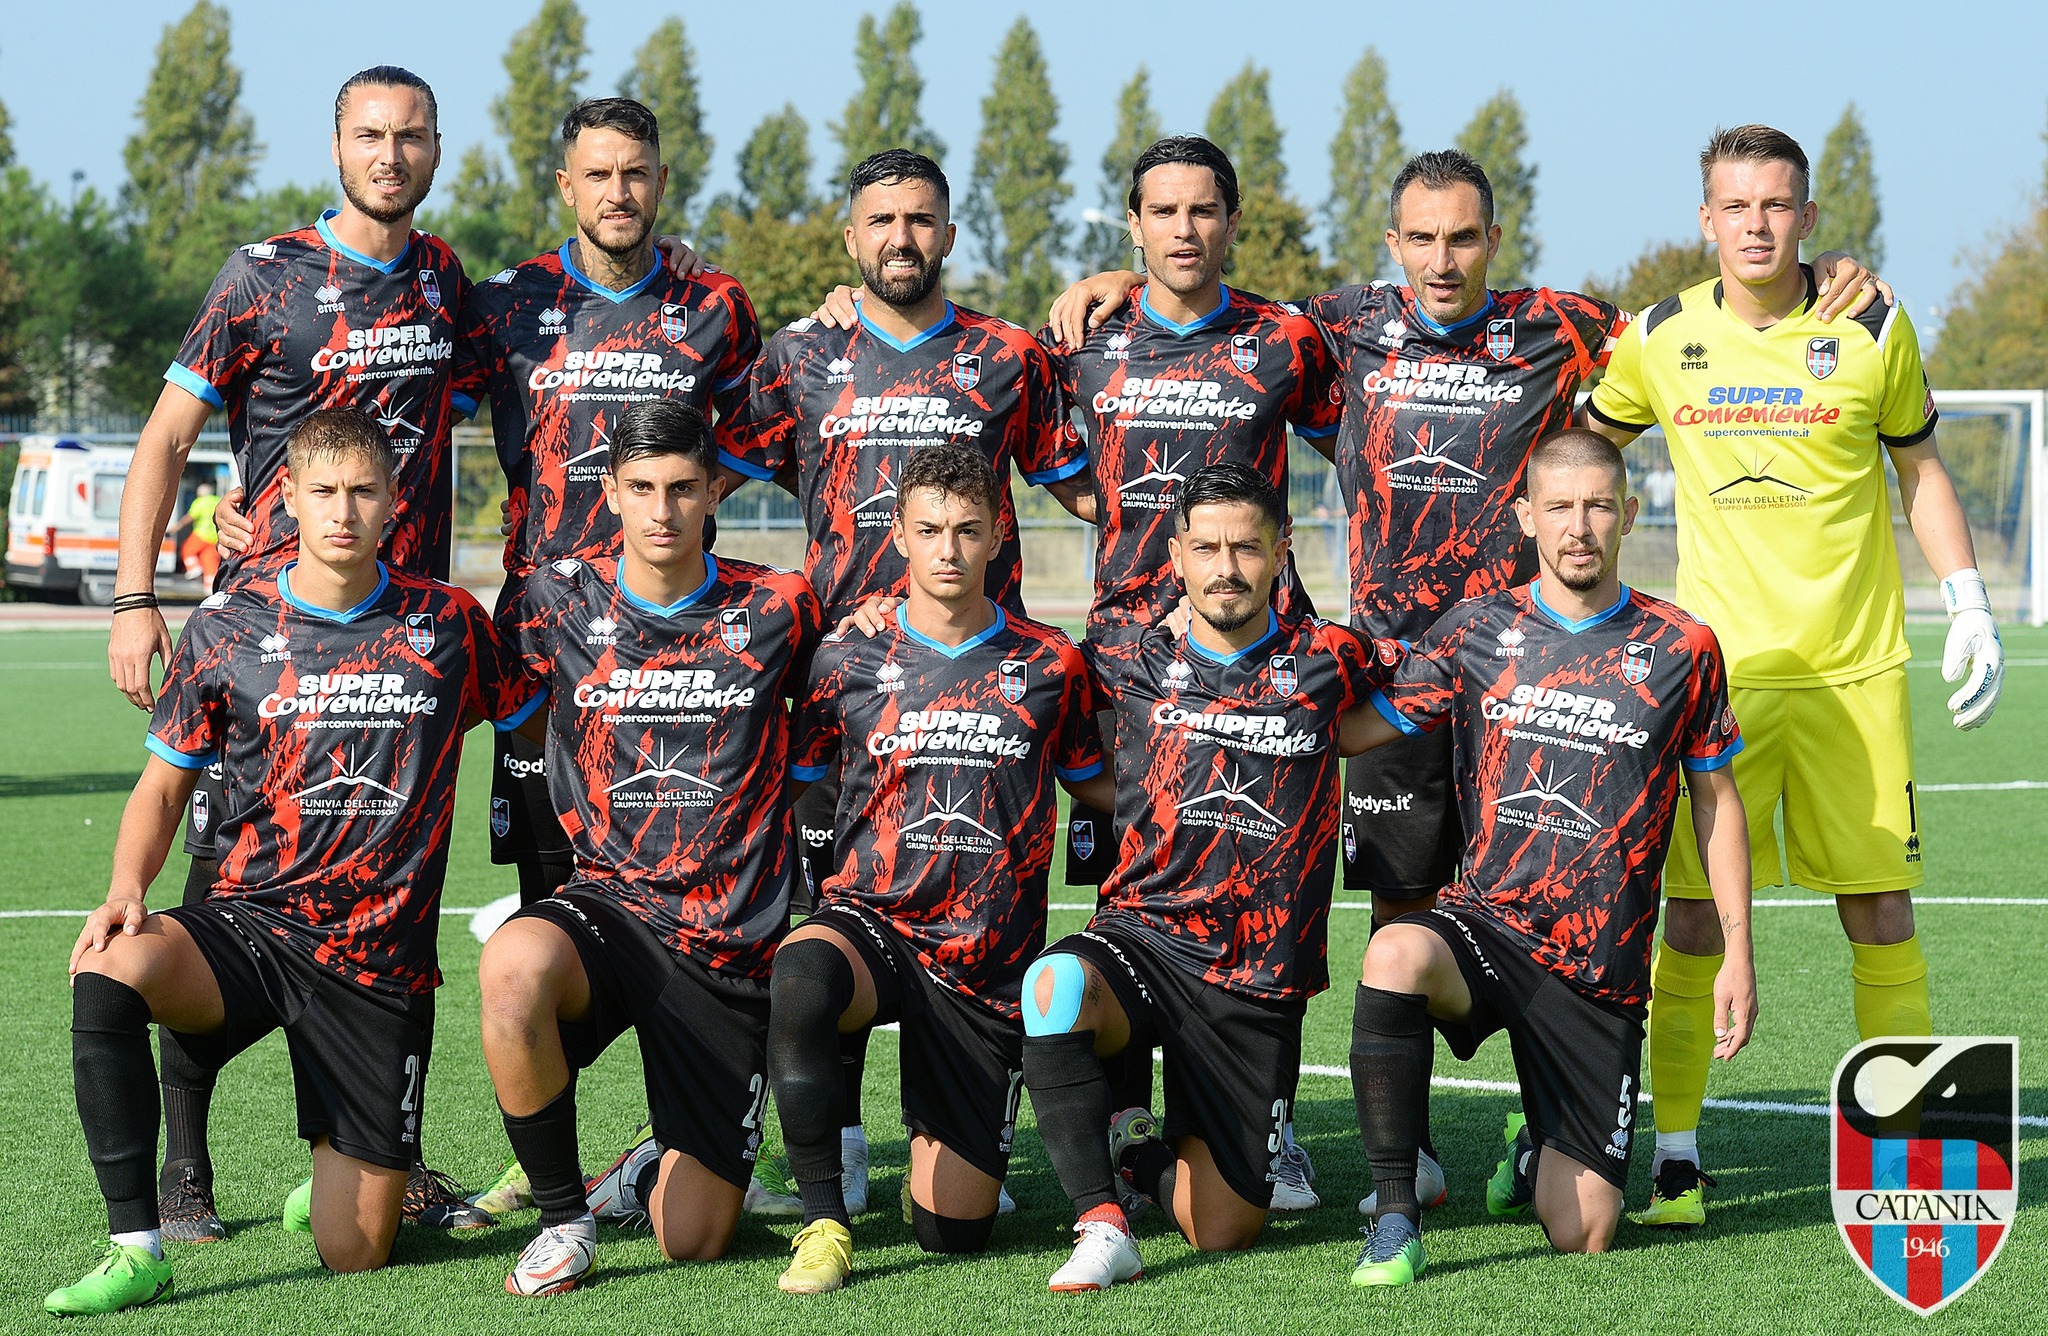 Mariglianese- Catania 1-2, vittoria e nuova maglia